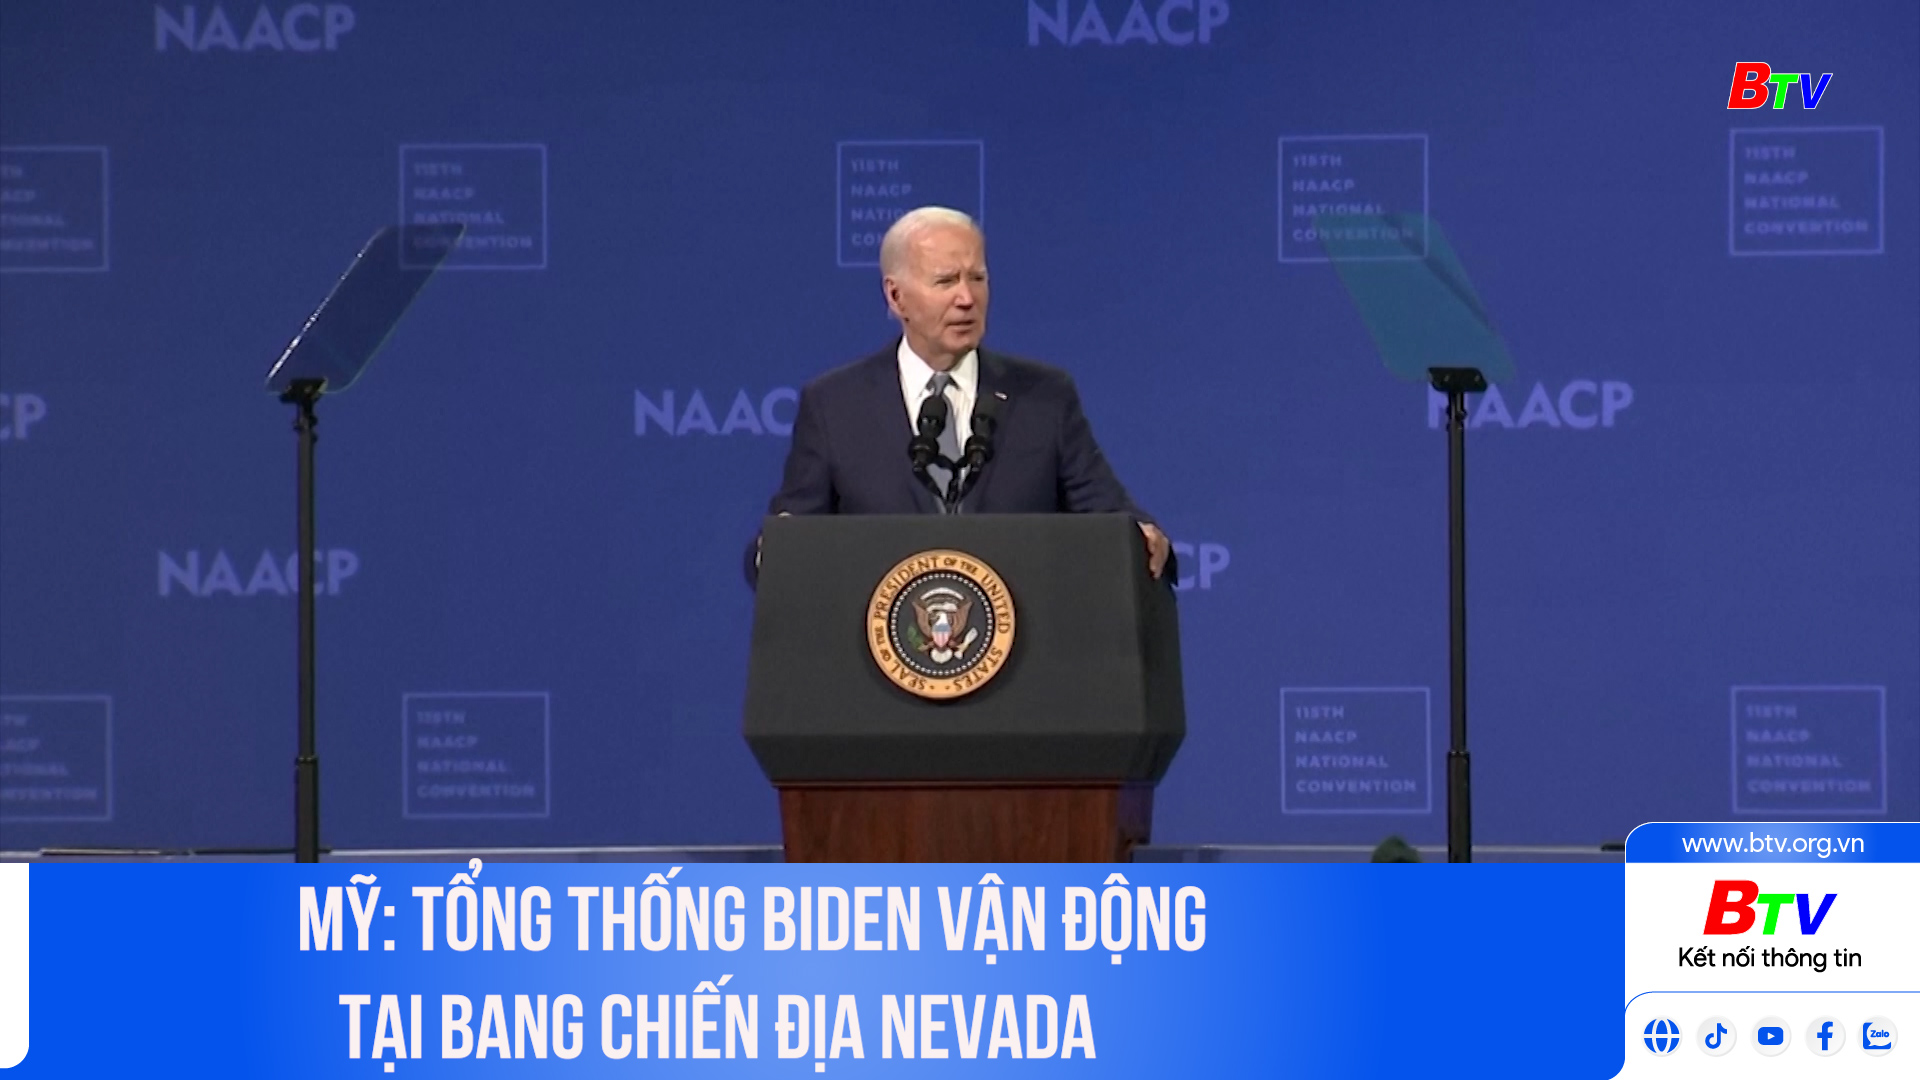 Mỹ: Tổng thống Biden vận động tại bang chiến địa Nevada